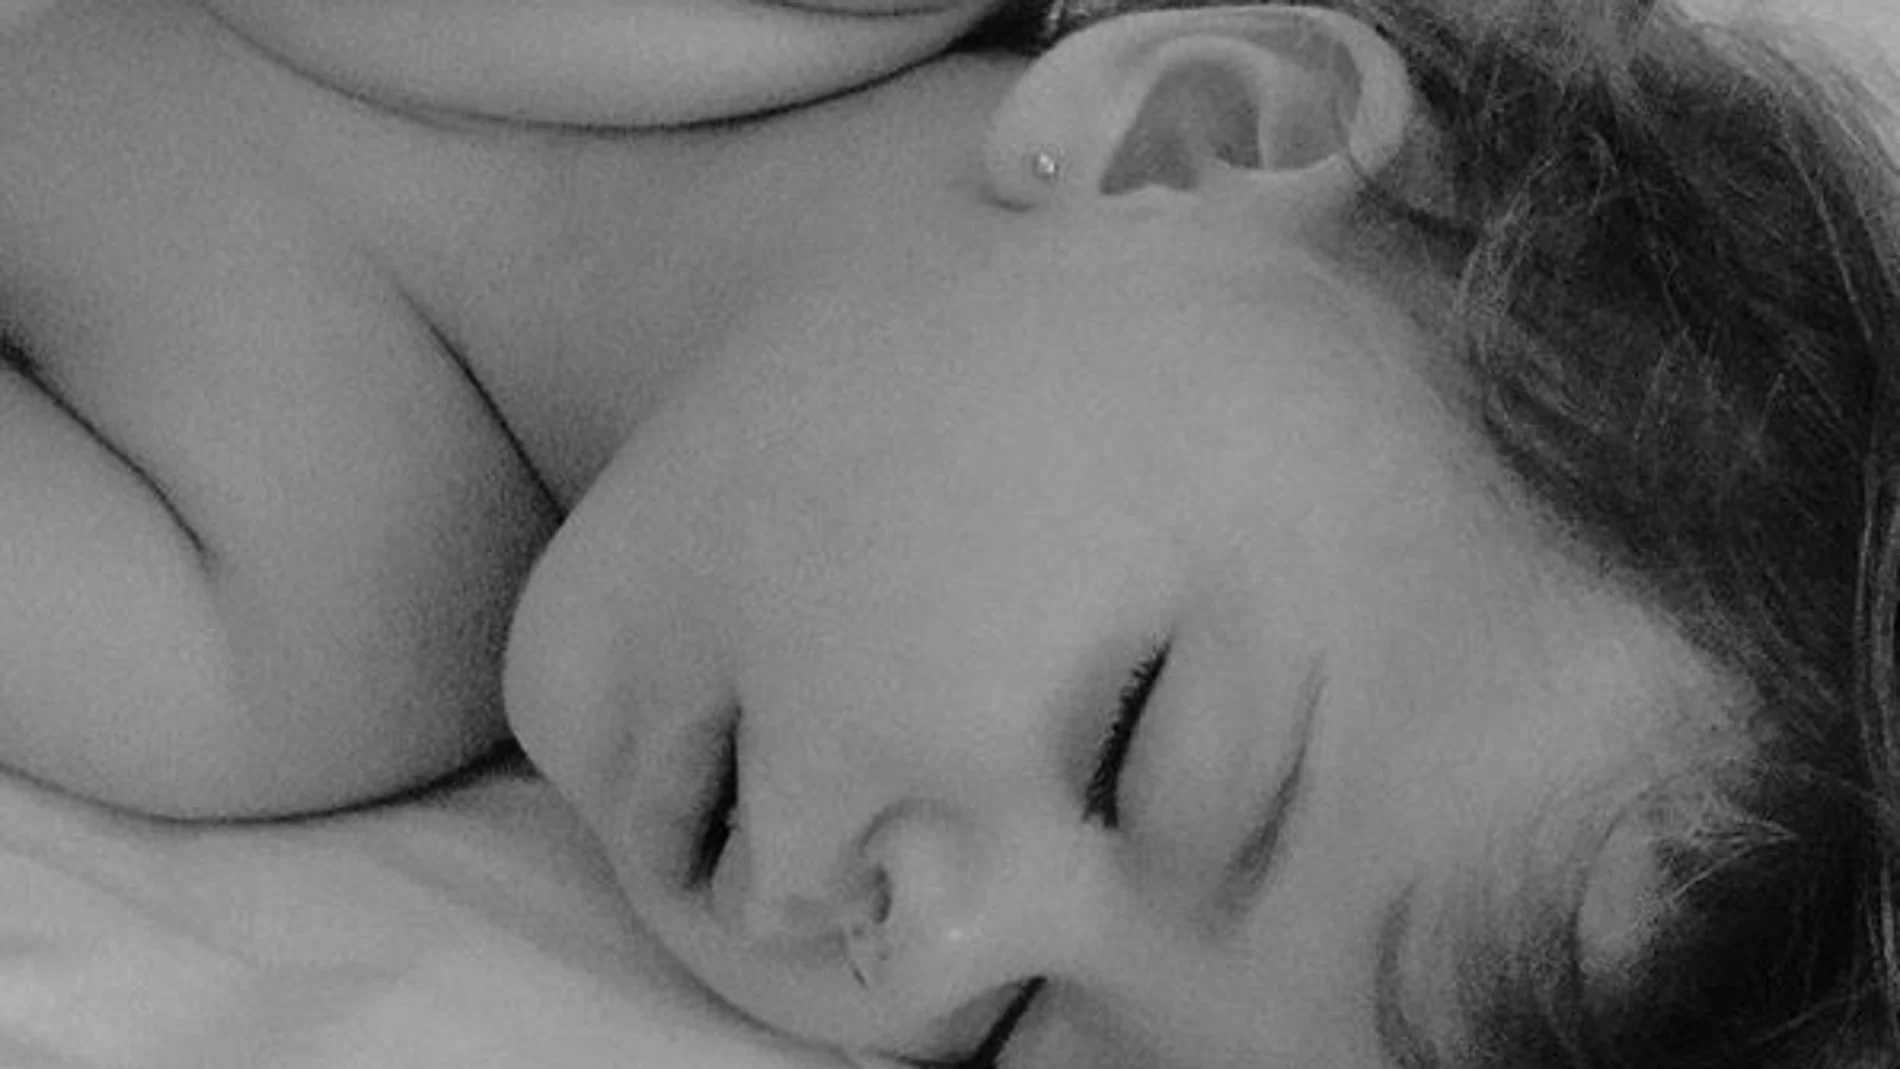 El crecimiento del bebé marca diferentes etapas en el sueño. Por ejemplo, a partir del año y medio empiezan las pesadillas, que hará que se despierte a menudo. Necesitan saber que sus padres están para dormir